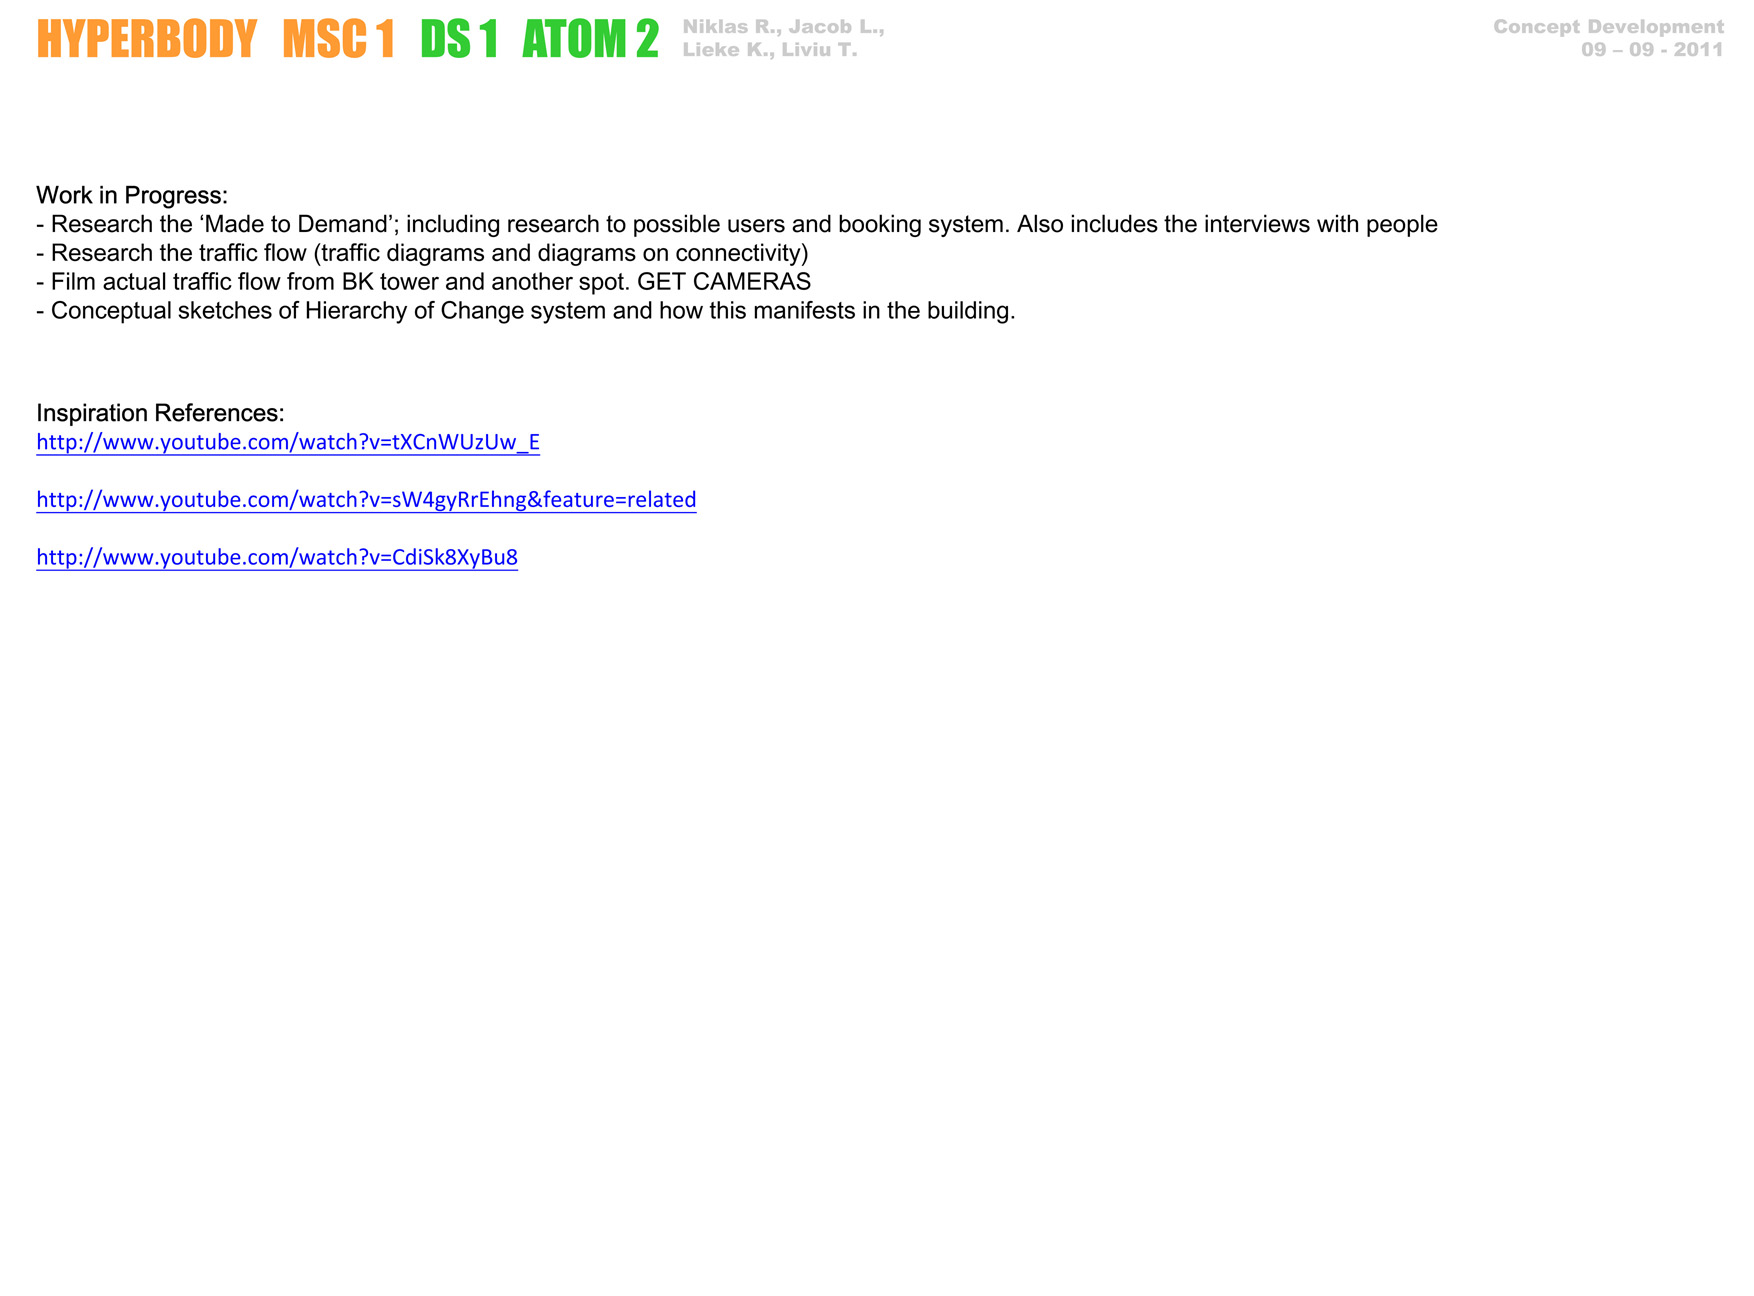 HYPERBODY MSC 1 DS 1 ATOM 2 12-09-2011-6.jpg